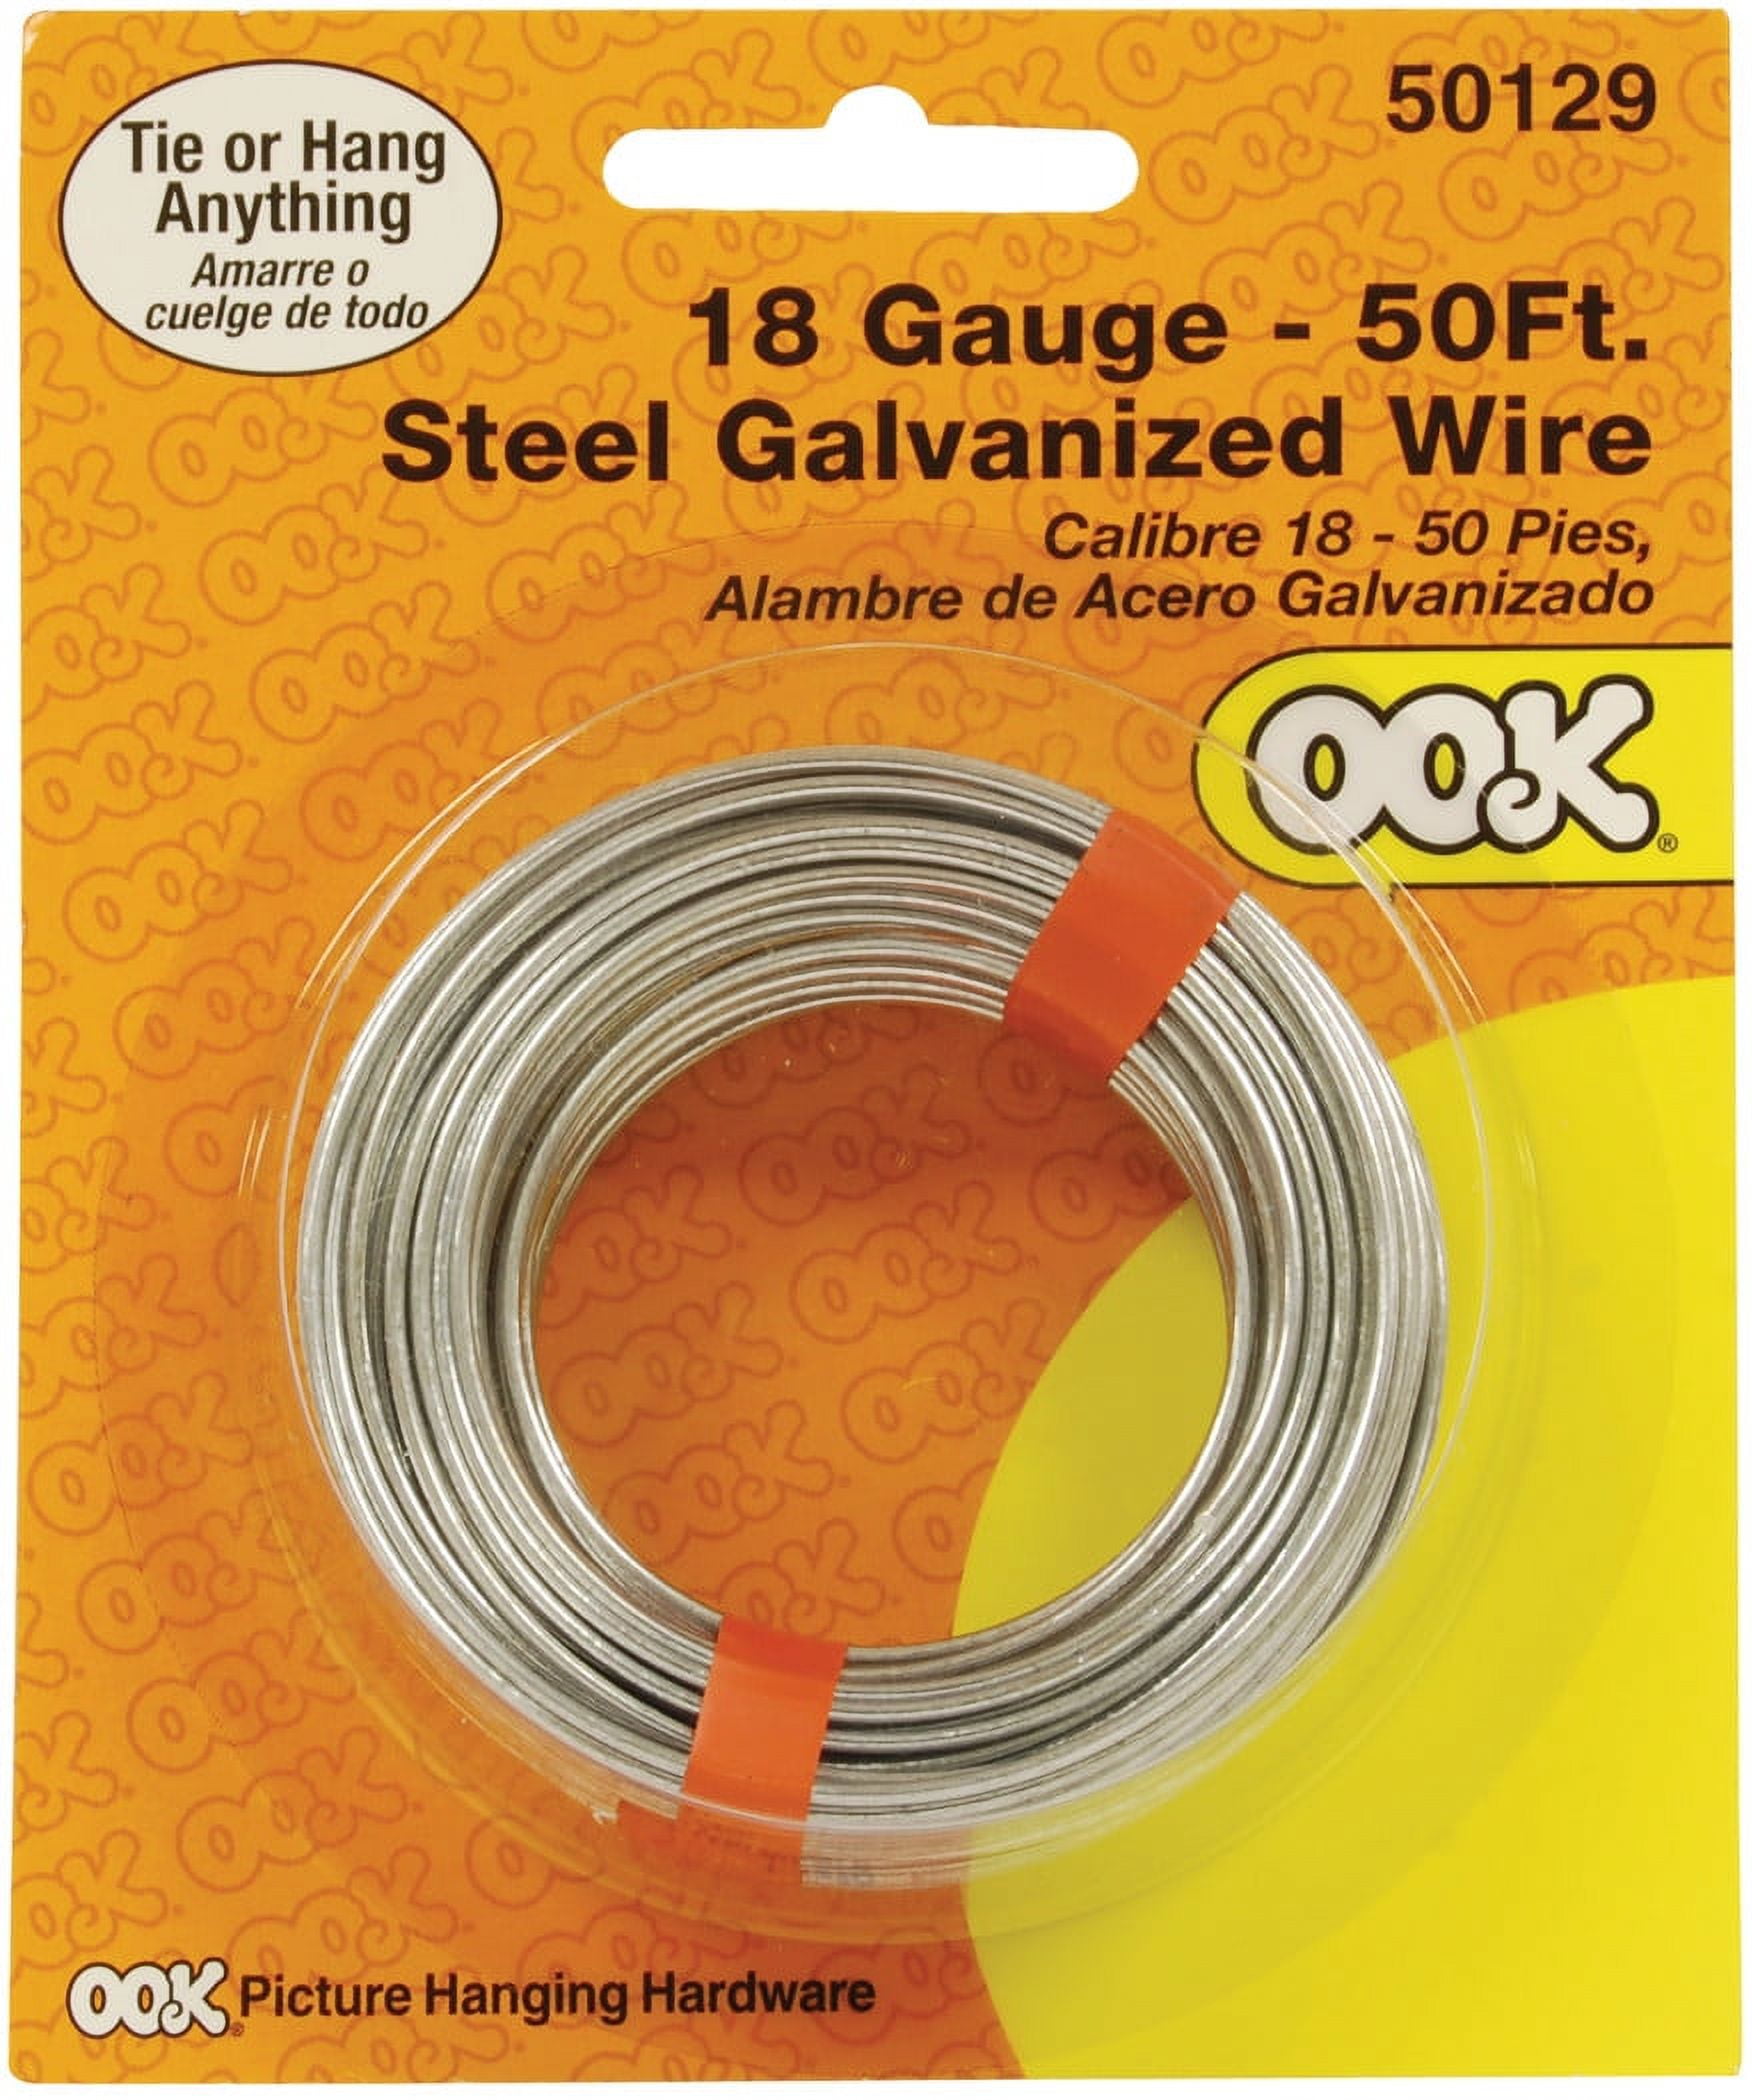 Ook 50132 19 Gauge, 50ft Steel Galvanized Wire